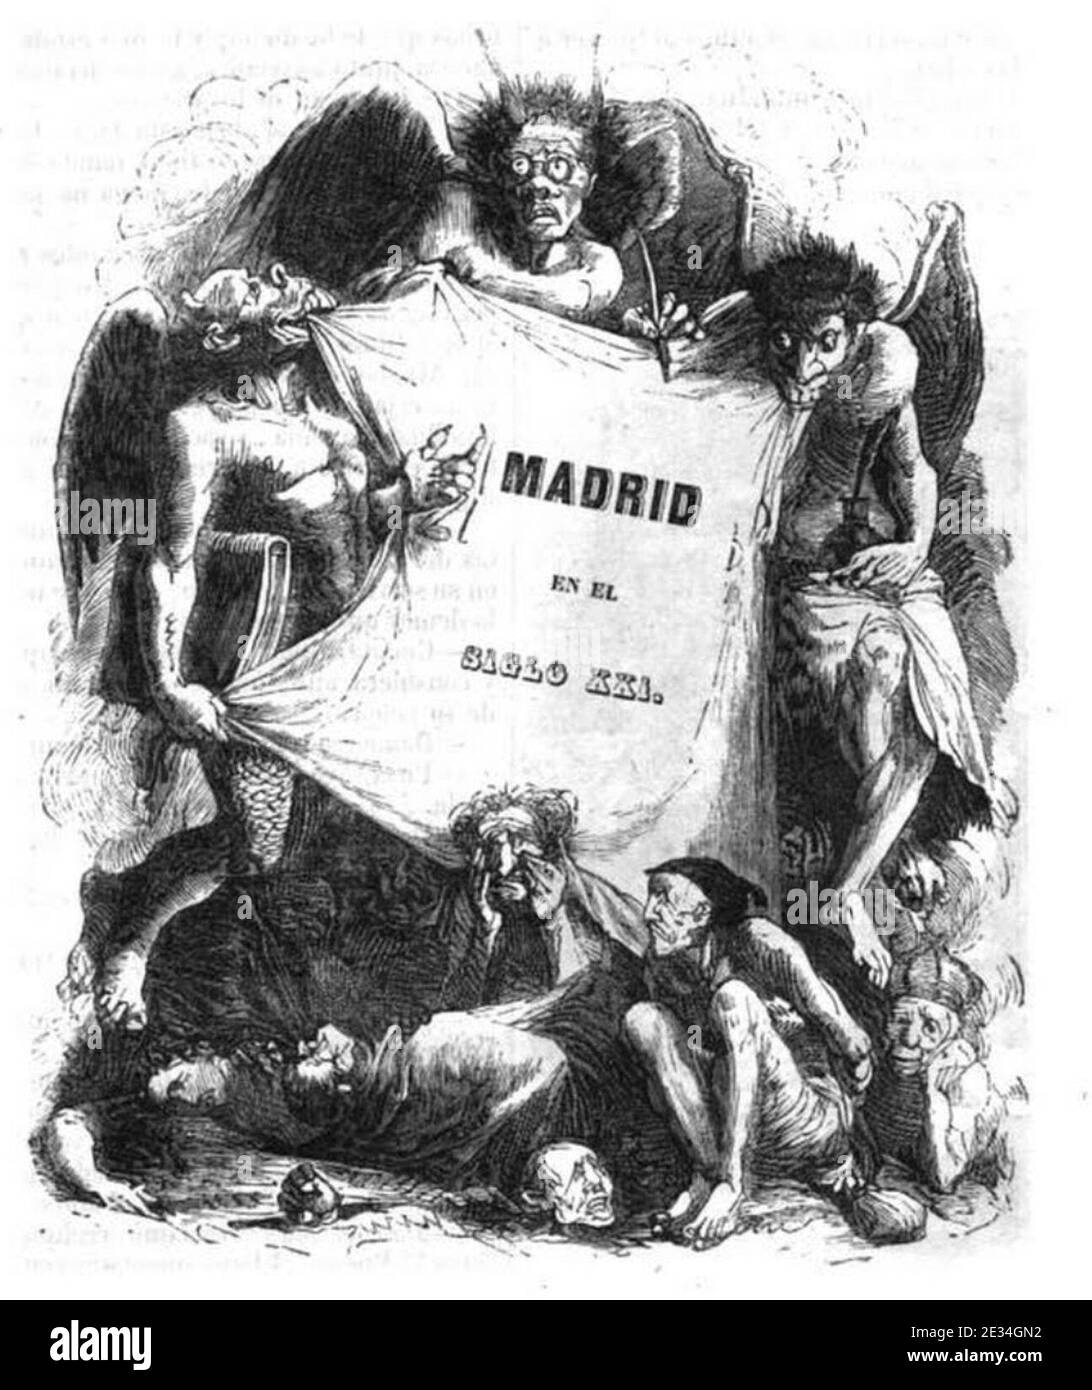 Madrid en el siglo xxi. Banque D'Images